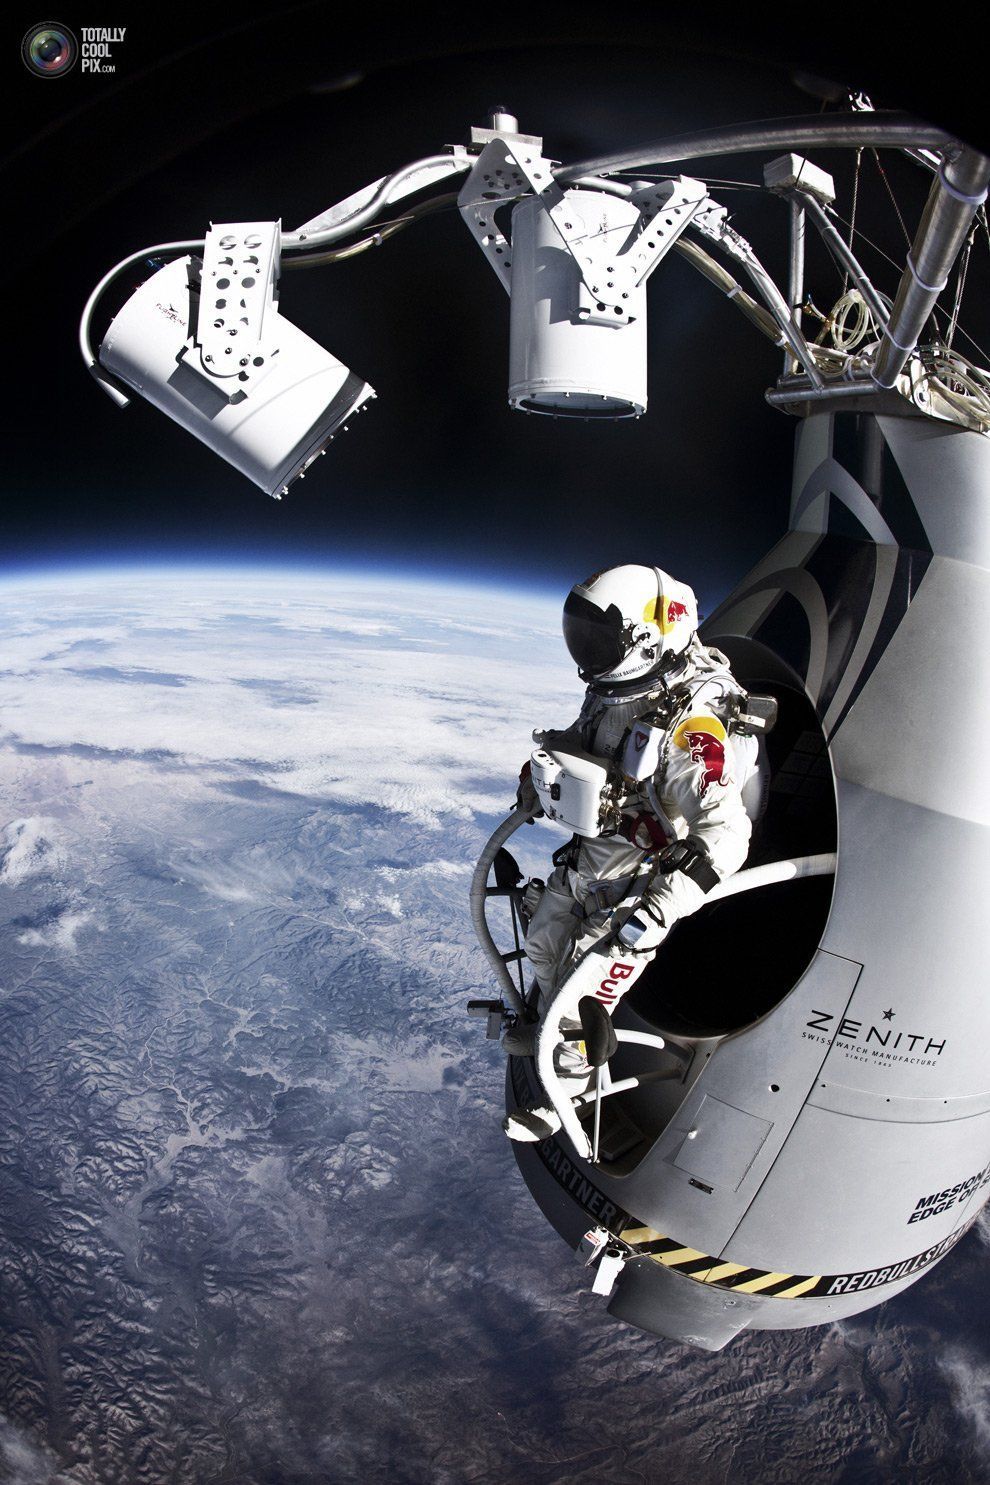 Red Bull Stratos : 39km de chute libre depuis la stratosphère + 2 parodies #4